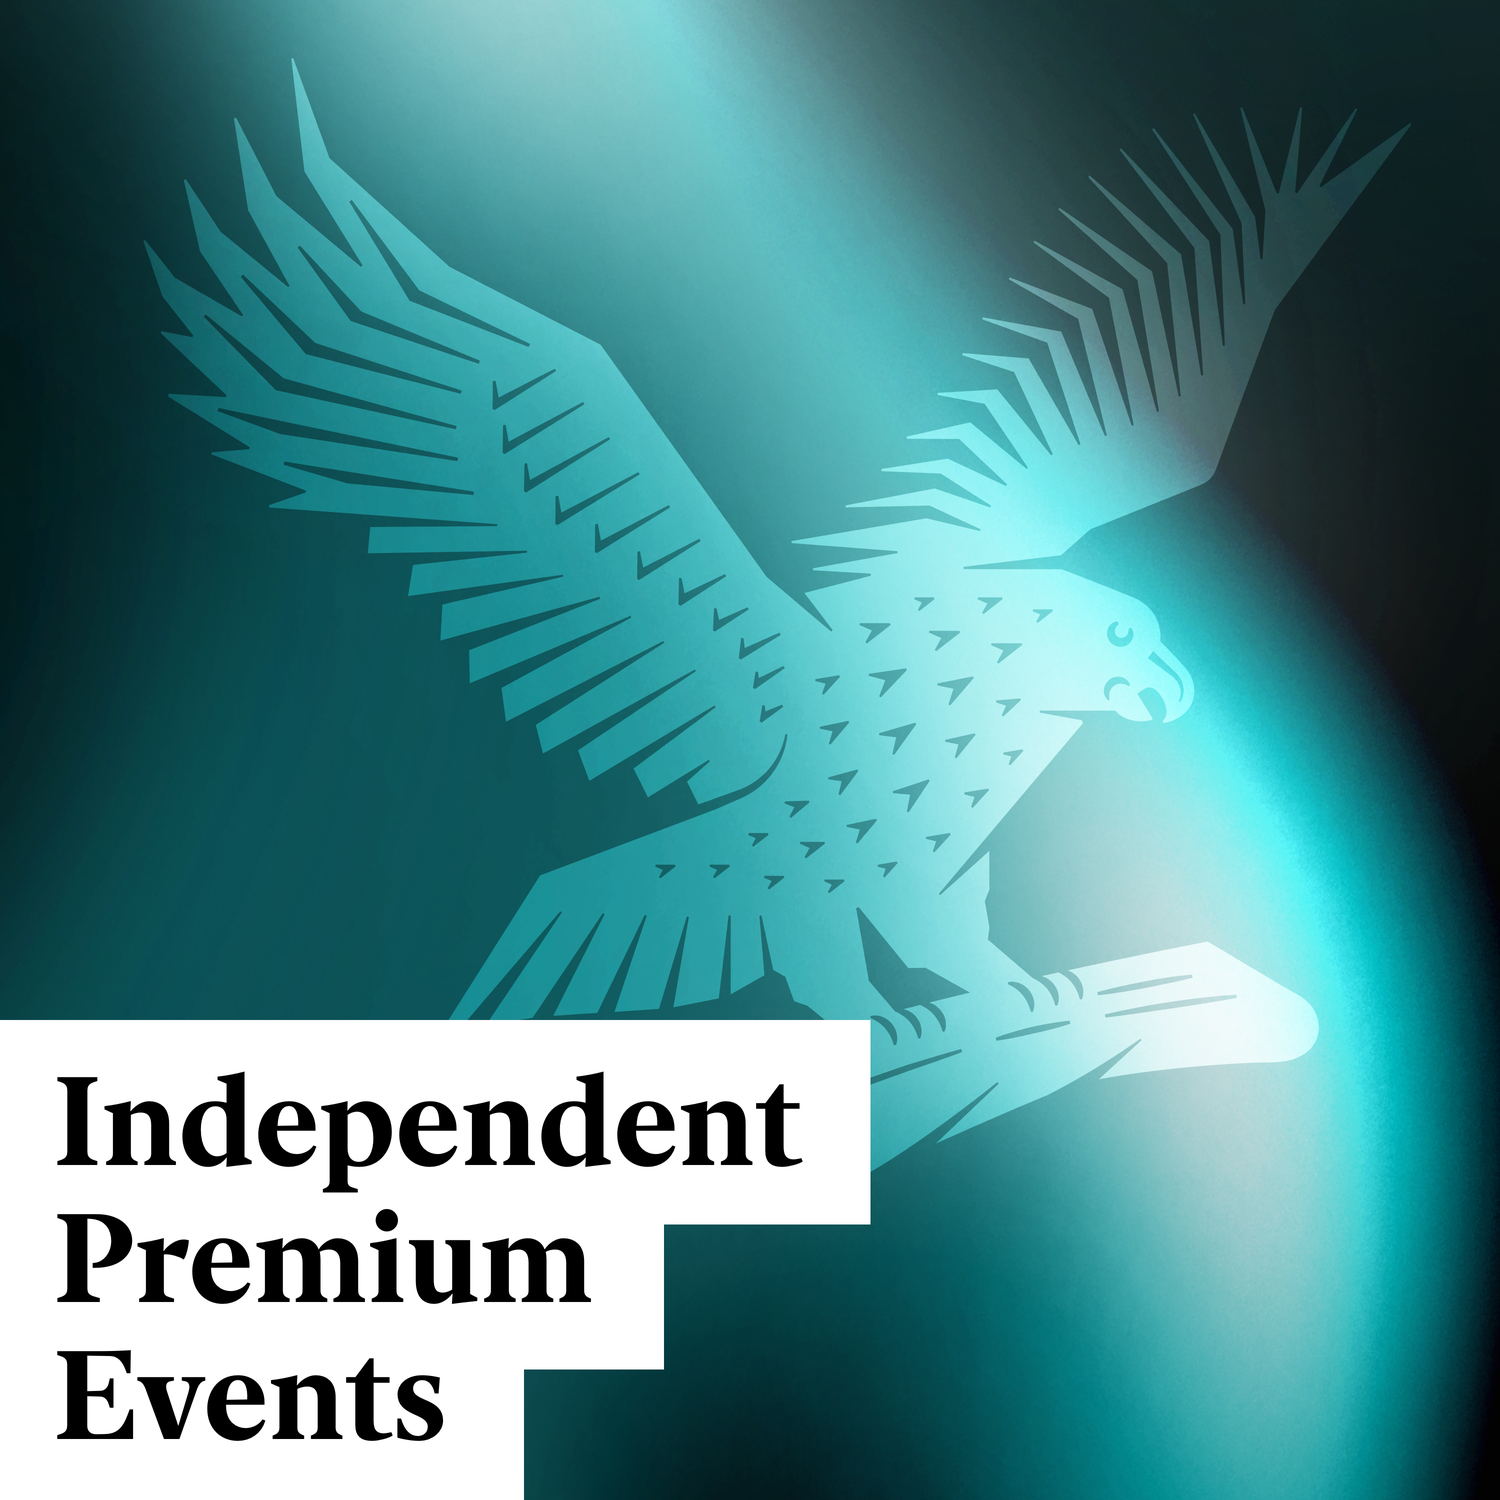 Independent Premium Events